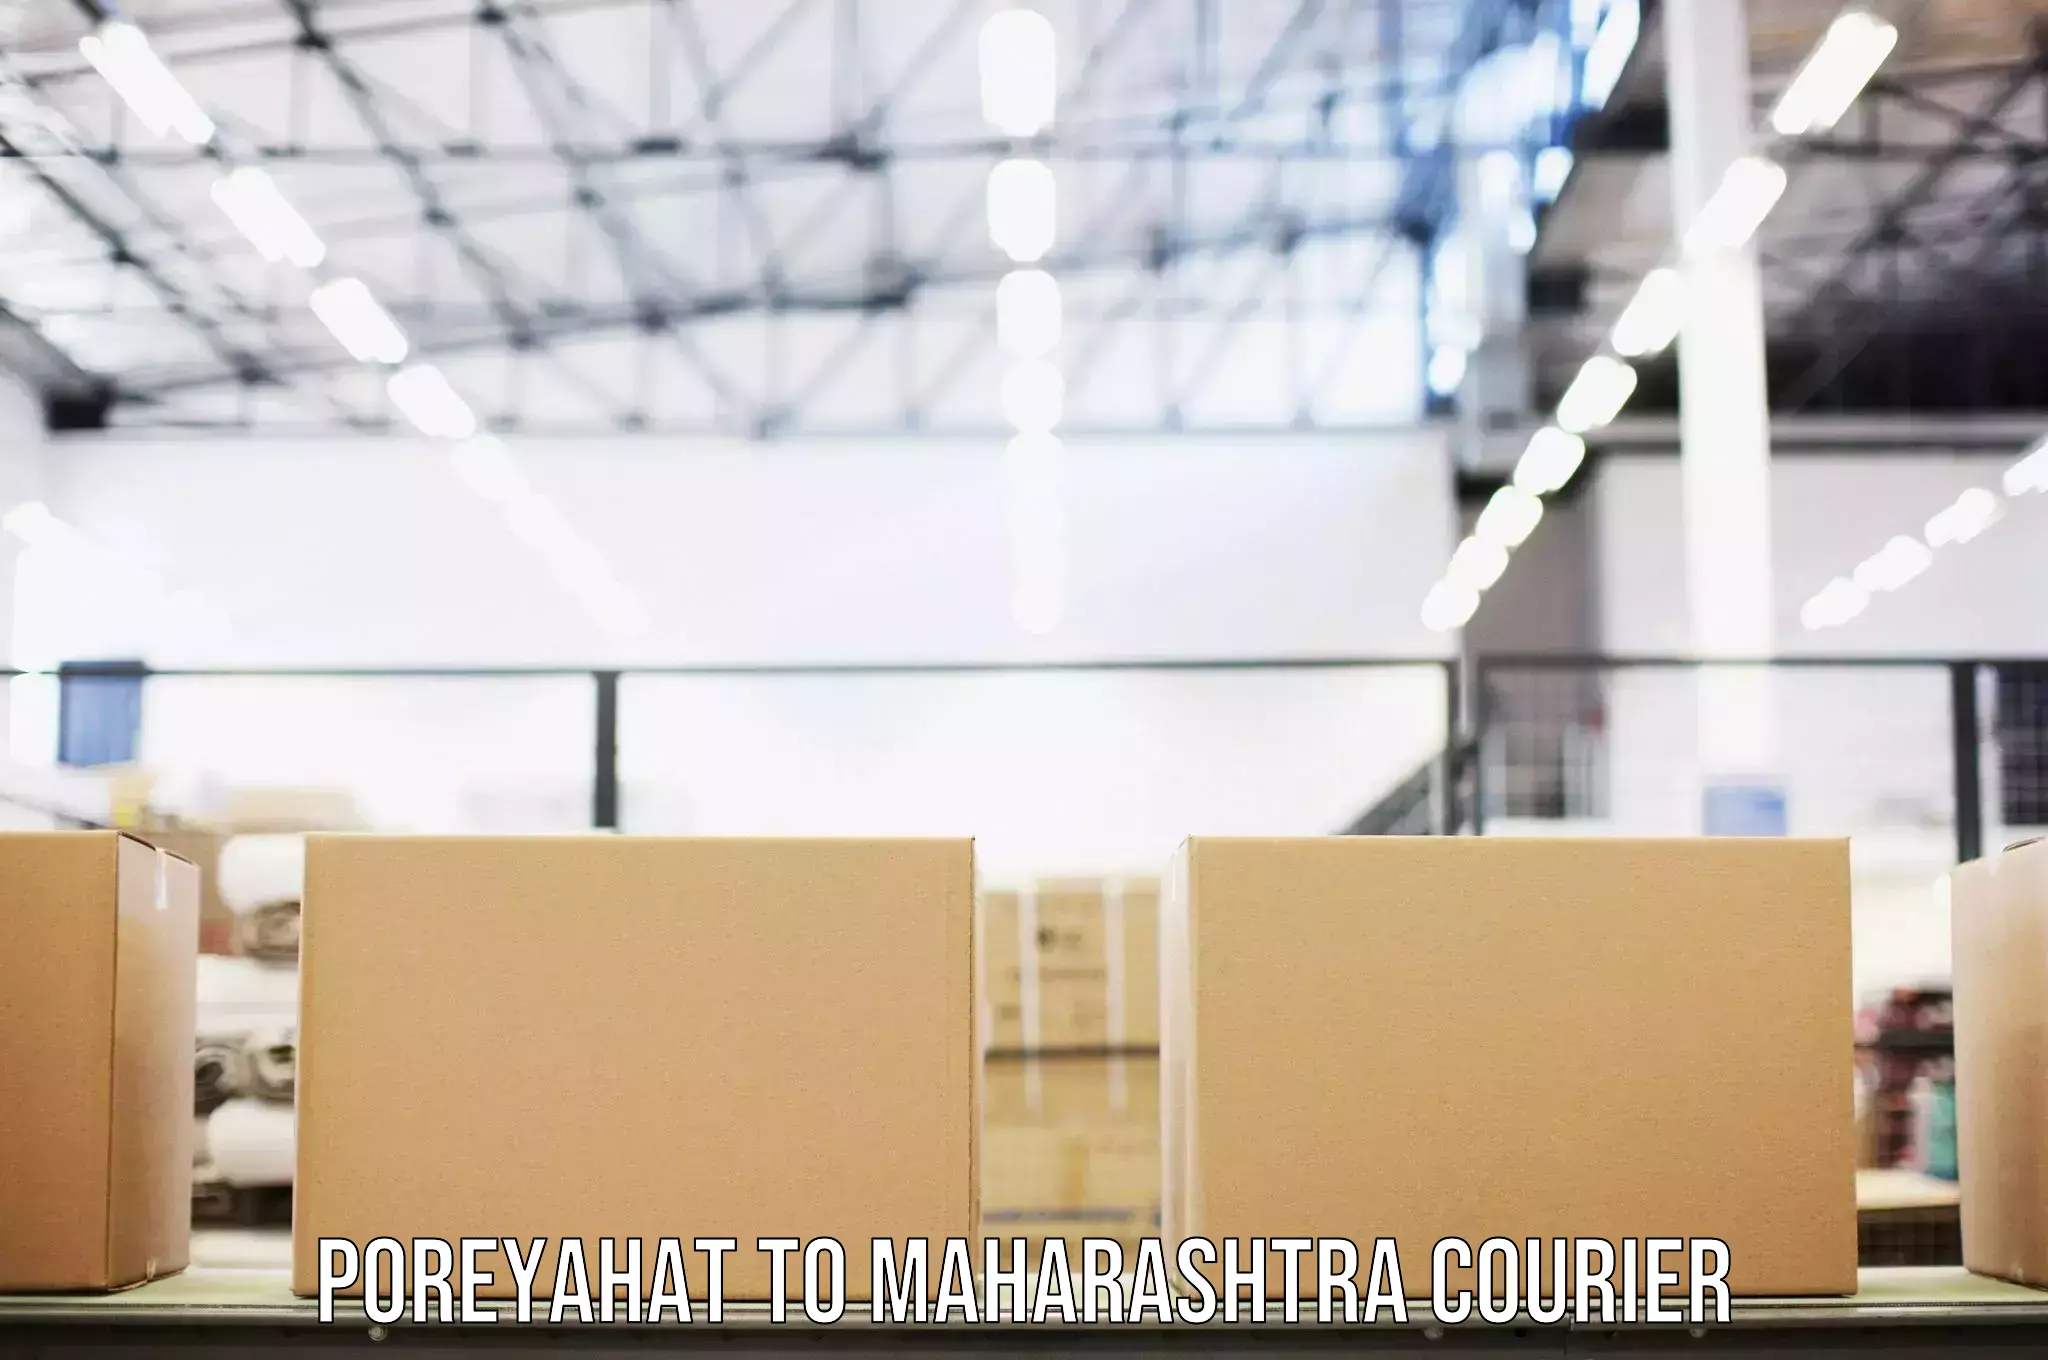 Online luggage shipping Poreyahat to Maharashtra